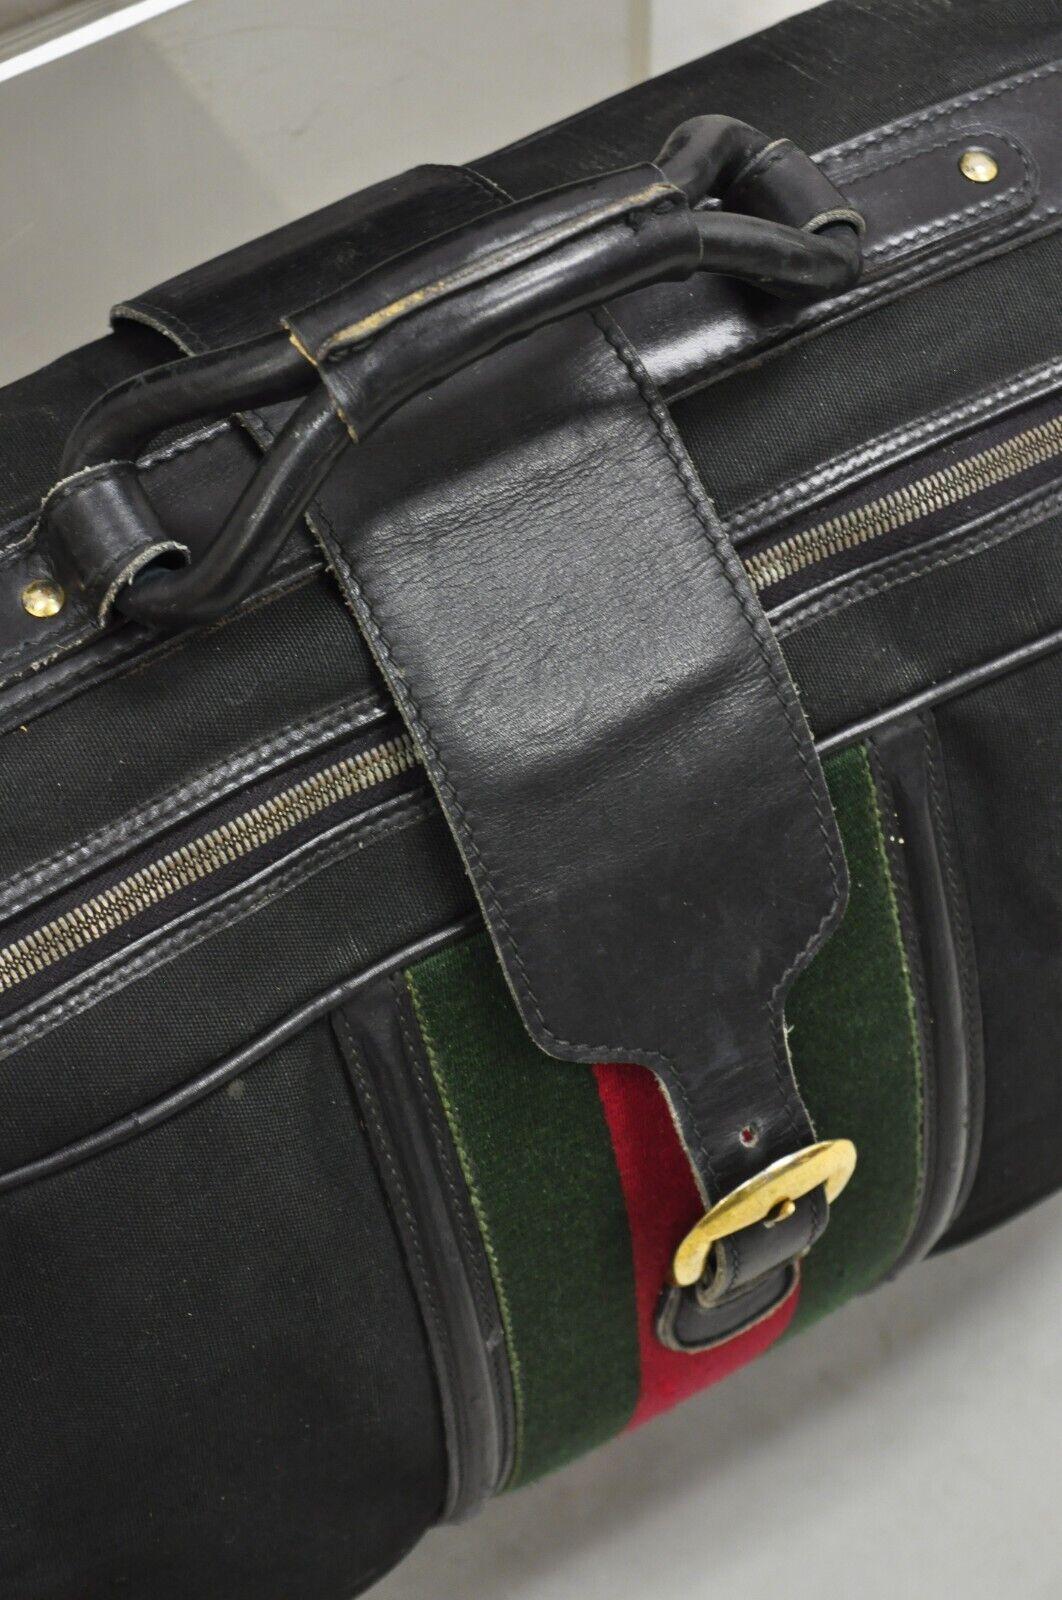 Vintage Gucci Black Canvas & Leather Suitcase Luggage Travel Bag Set - 2 Pcs For Sale 2